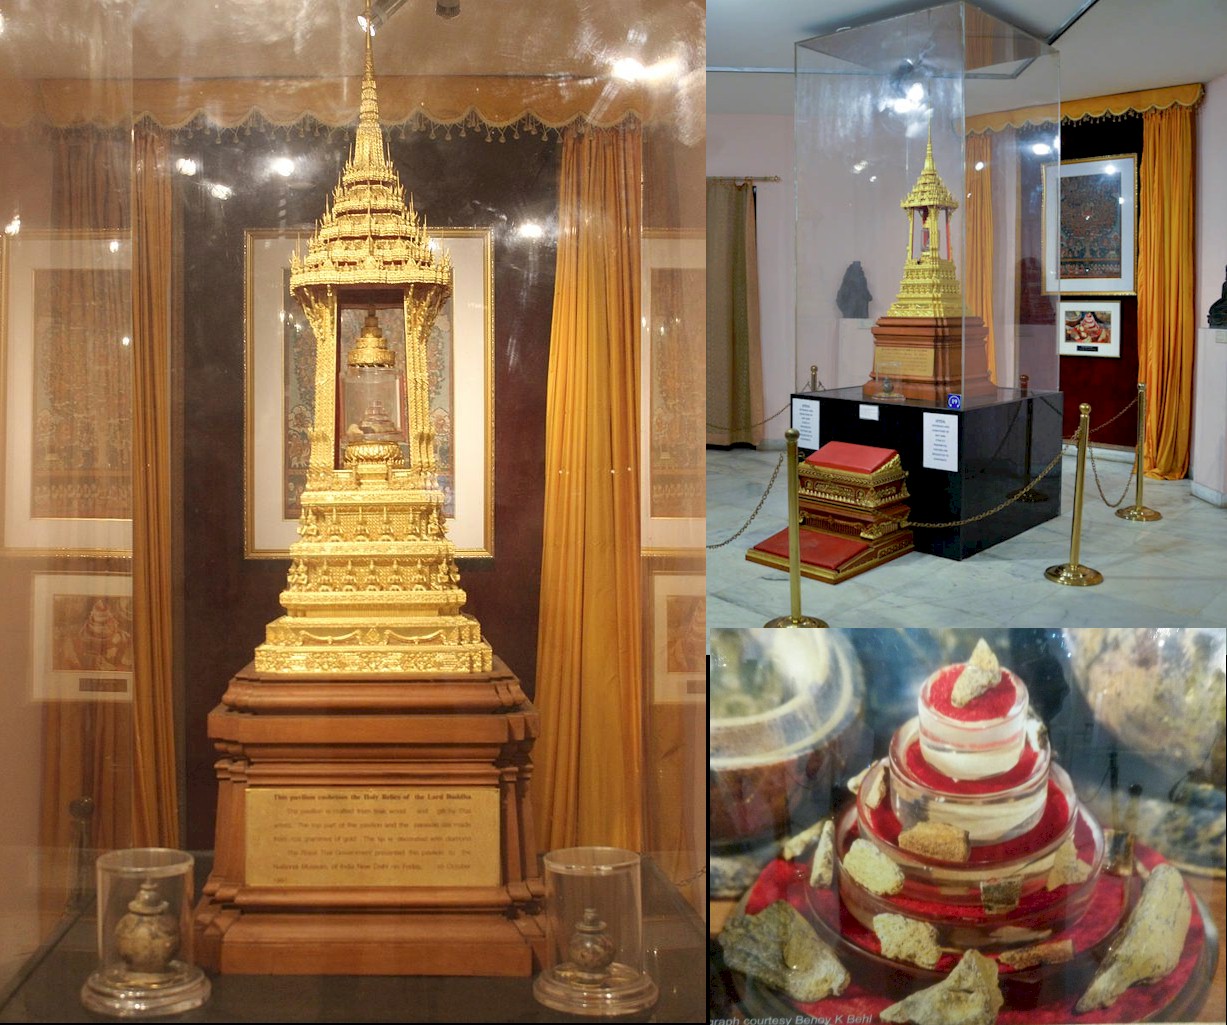 Tháp Xá Lợi bên trong có chứa Xá Lợi xương đầu của Đức Phật Thích Ca được trưng bày tại viện Bảo Tàng New Delhi - Ấn Độ